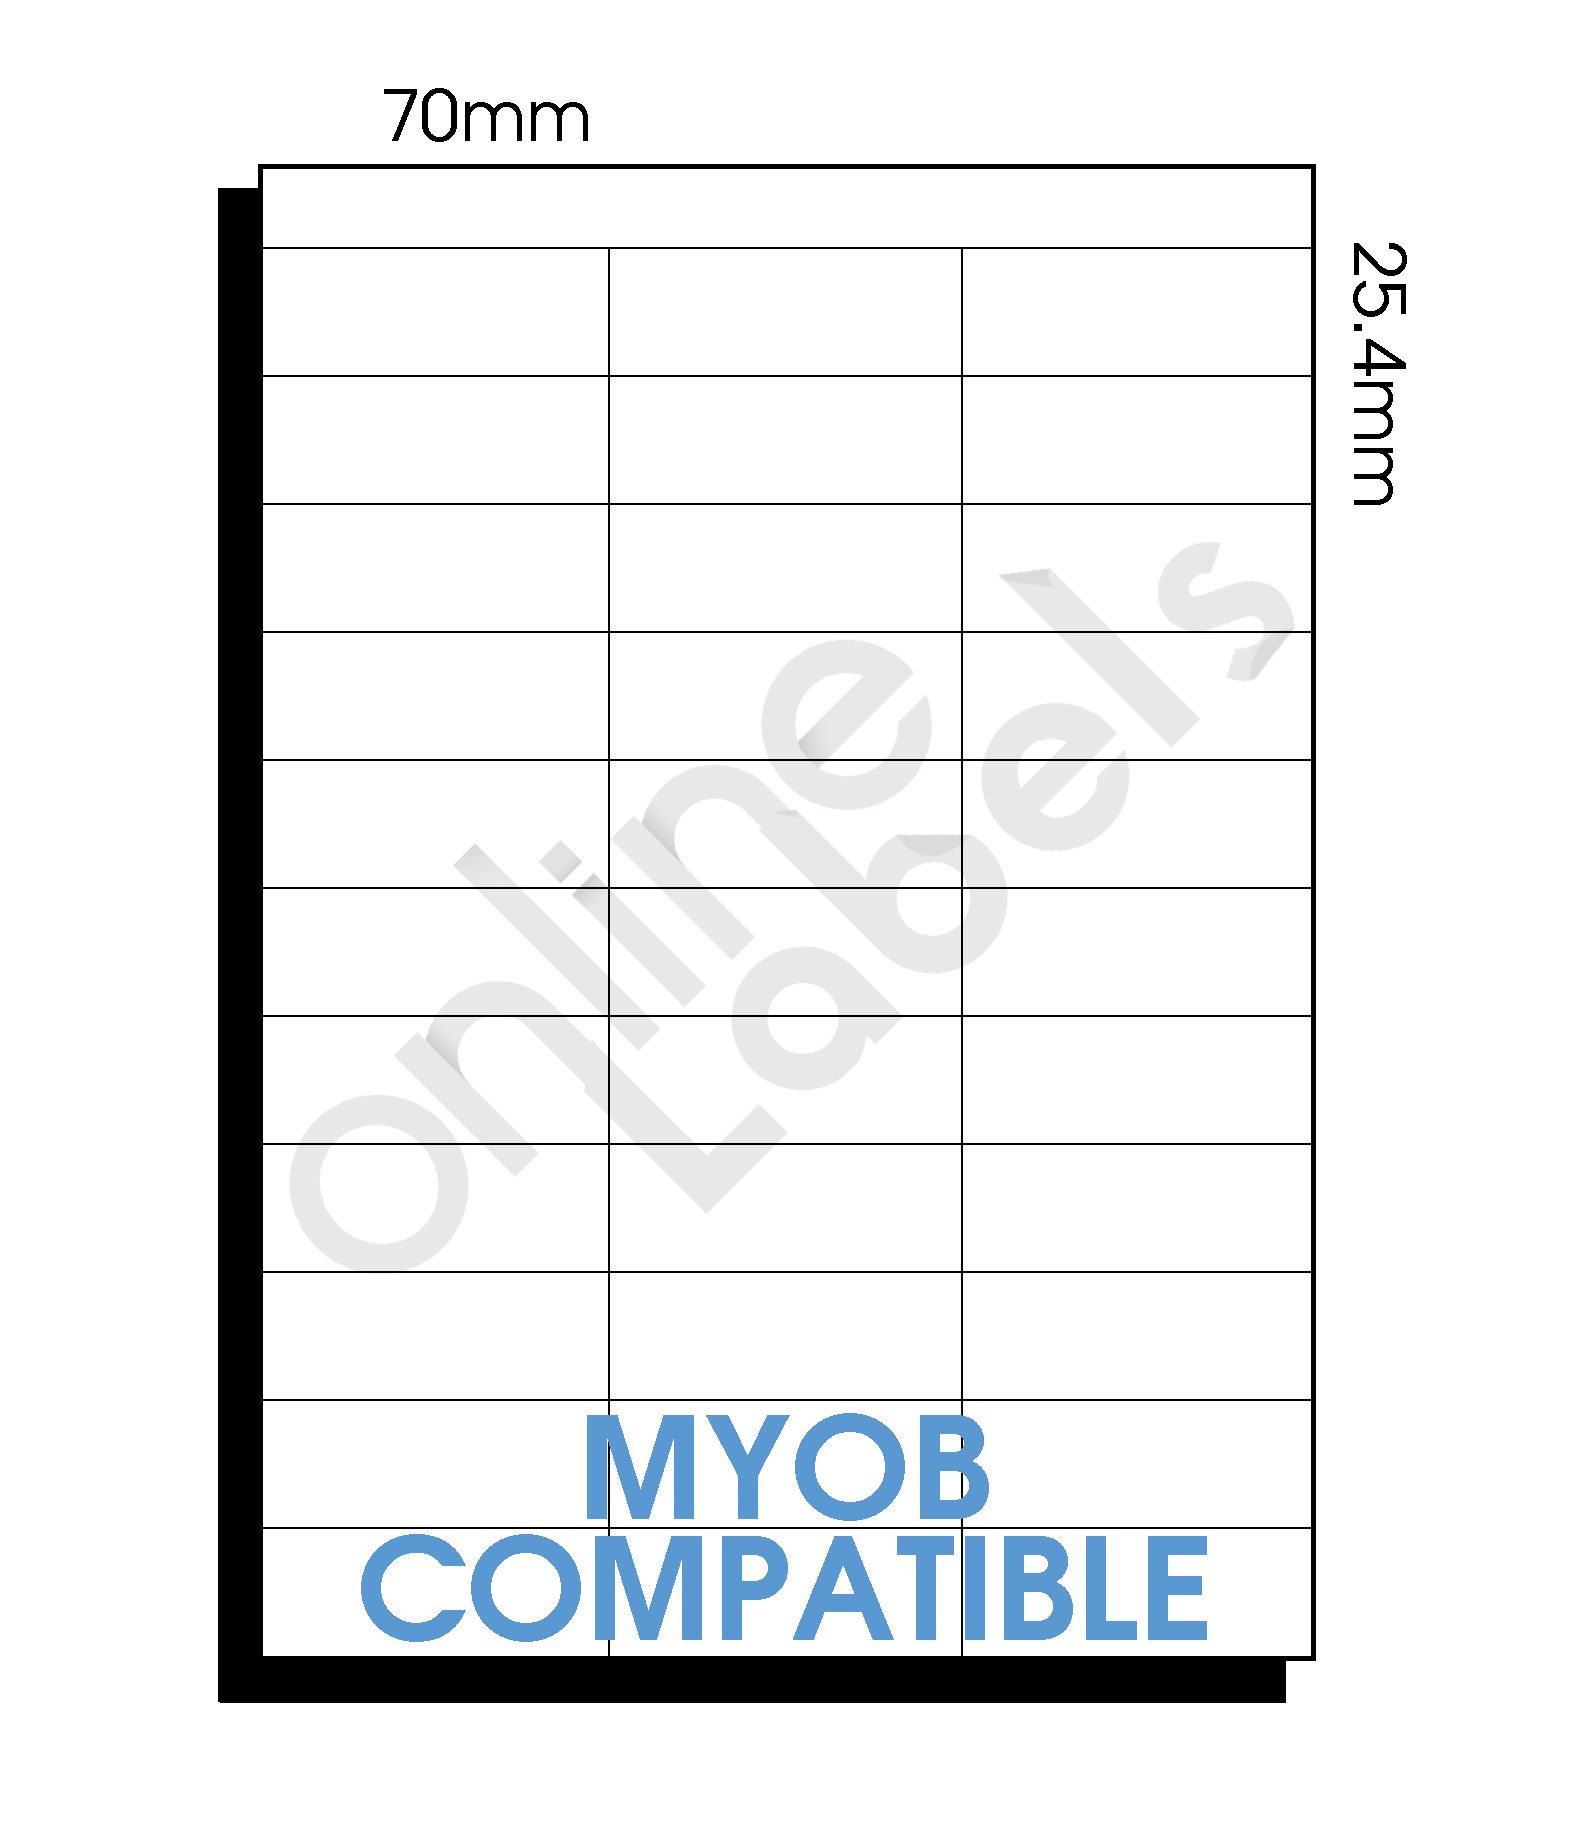 70mm x 25.4mm MYOB Compatible 33 Labels per Sheet Online Labels